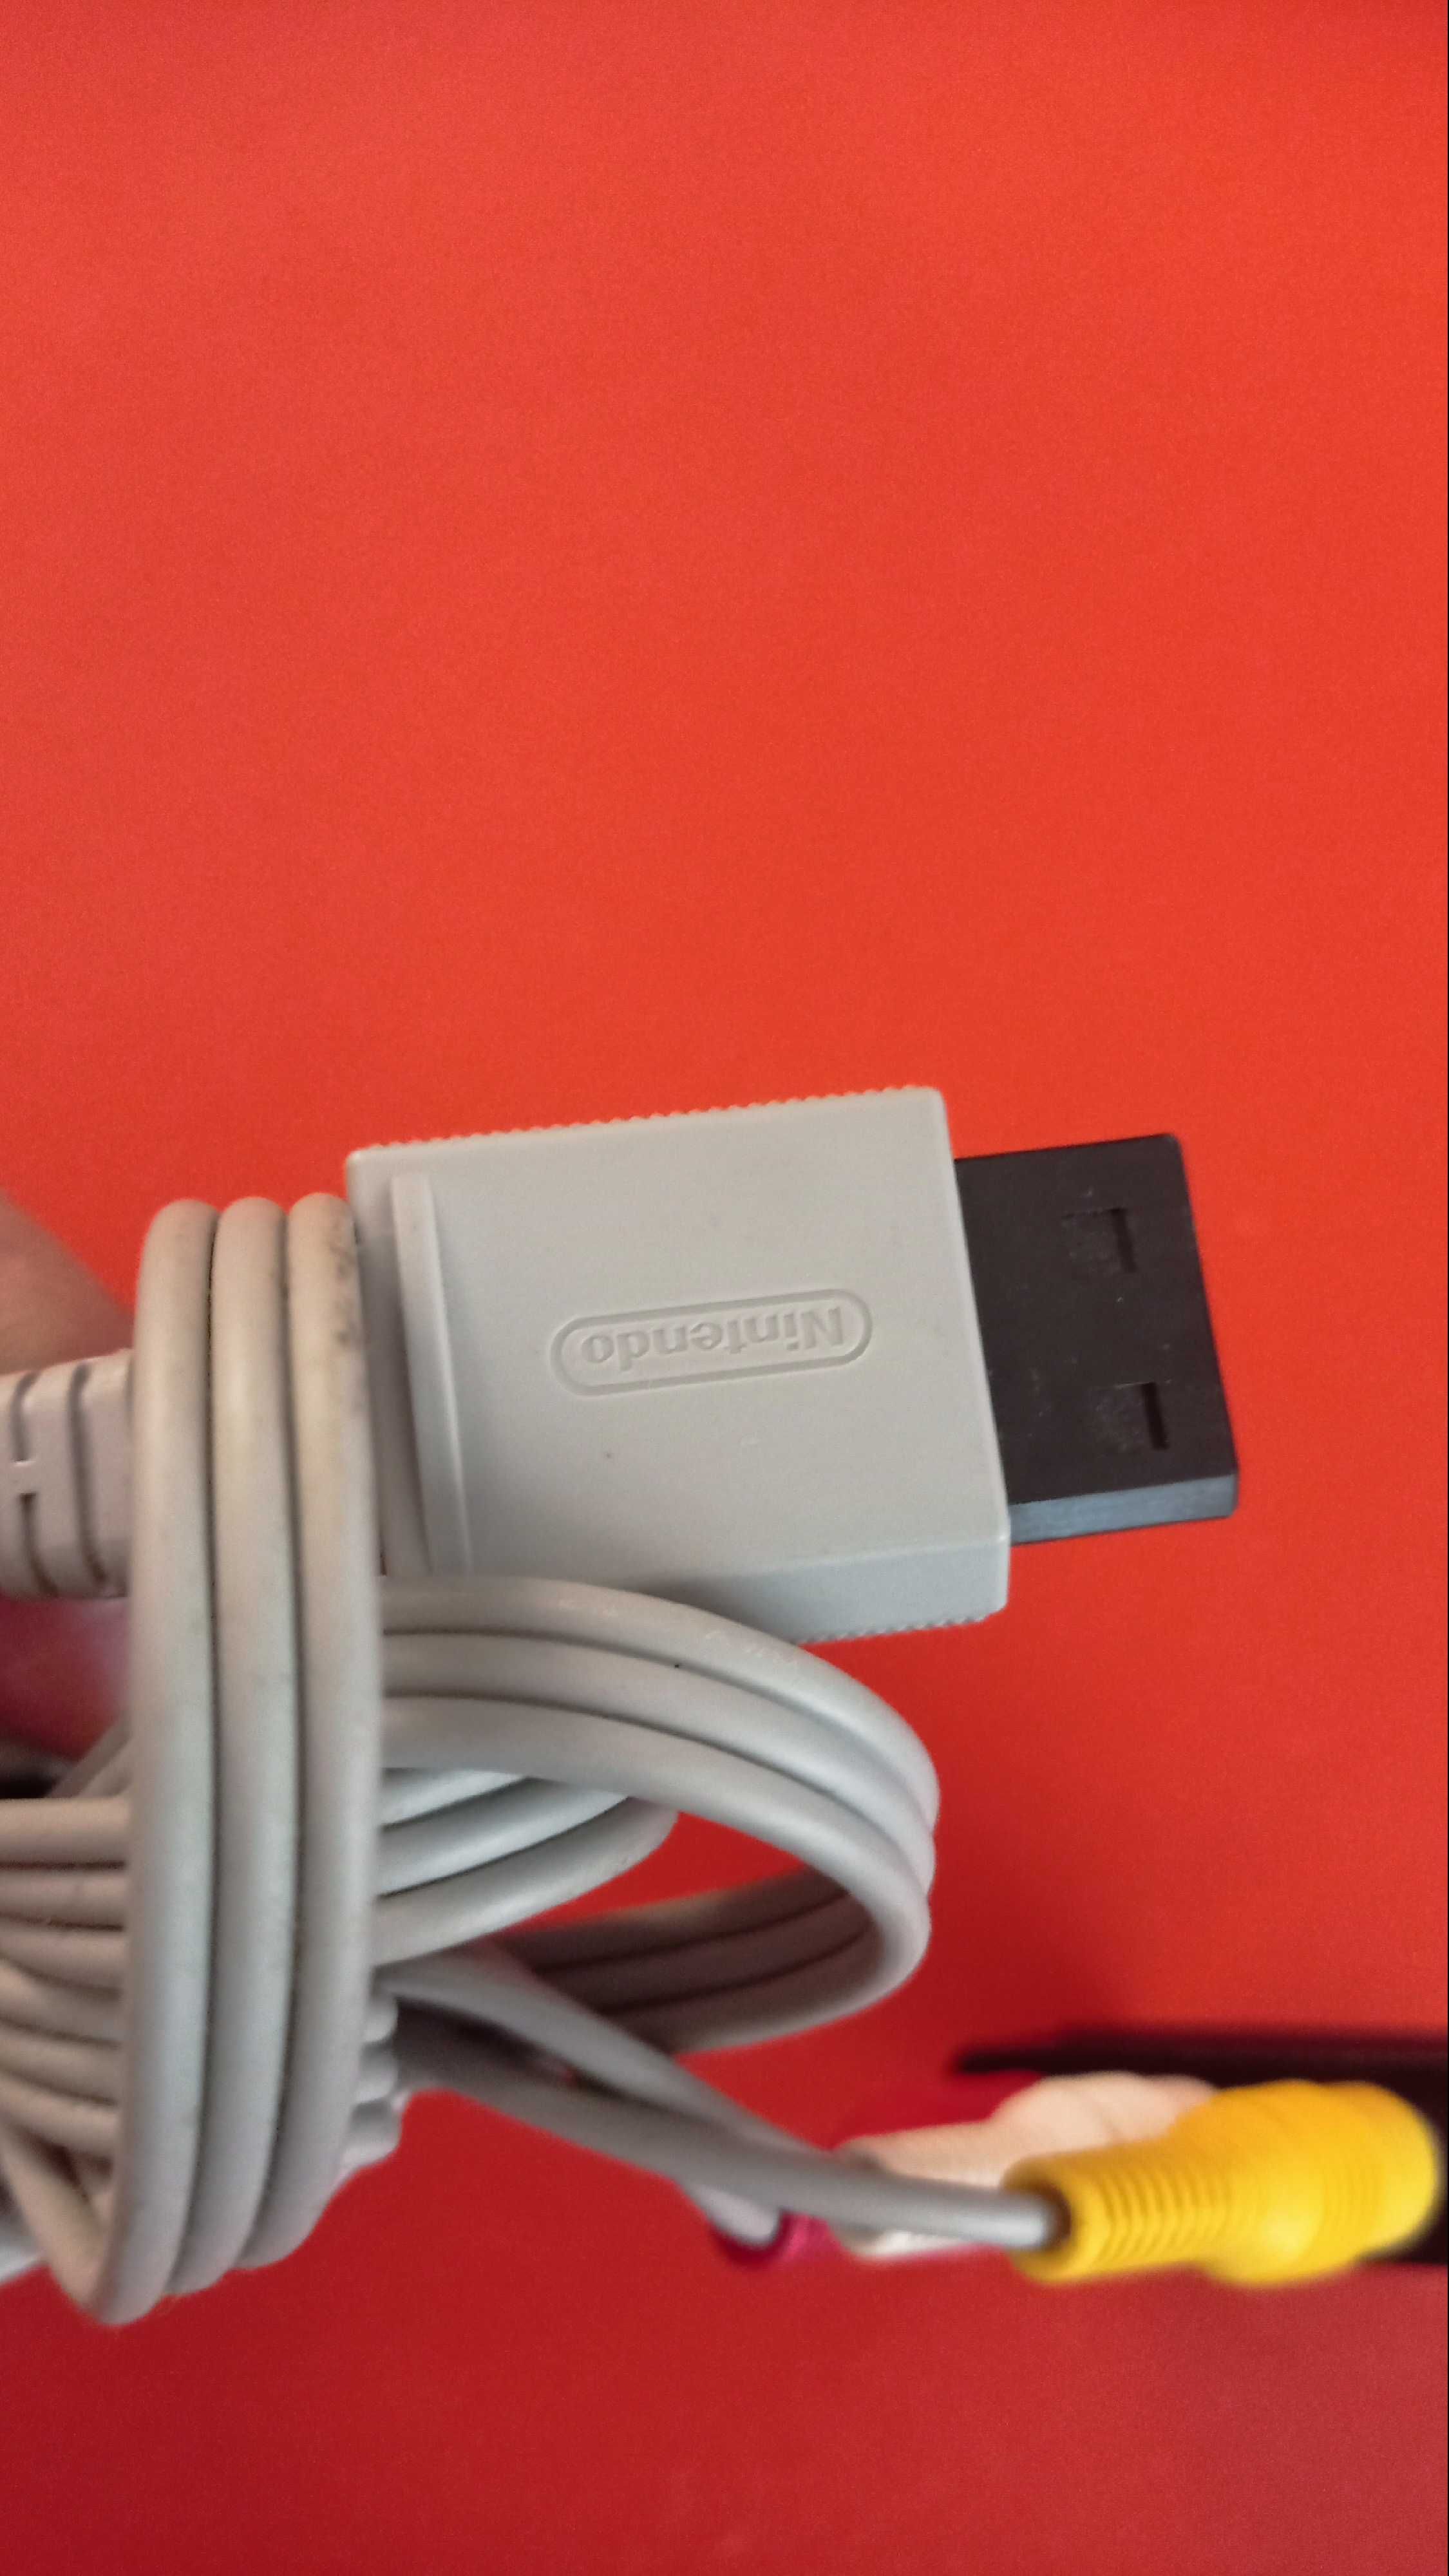 Cablu consolă Nintendo Wii